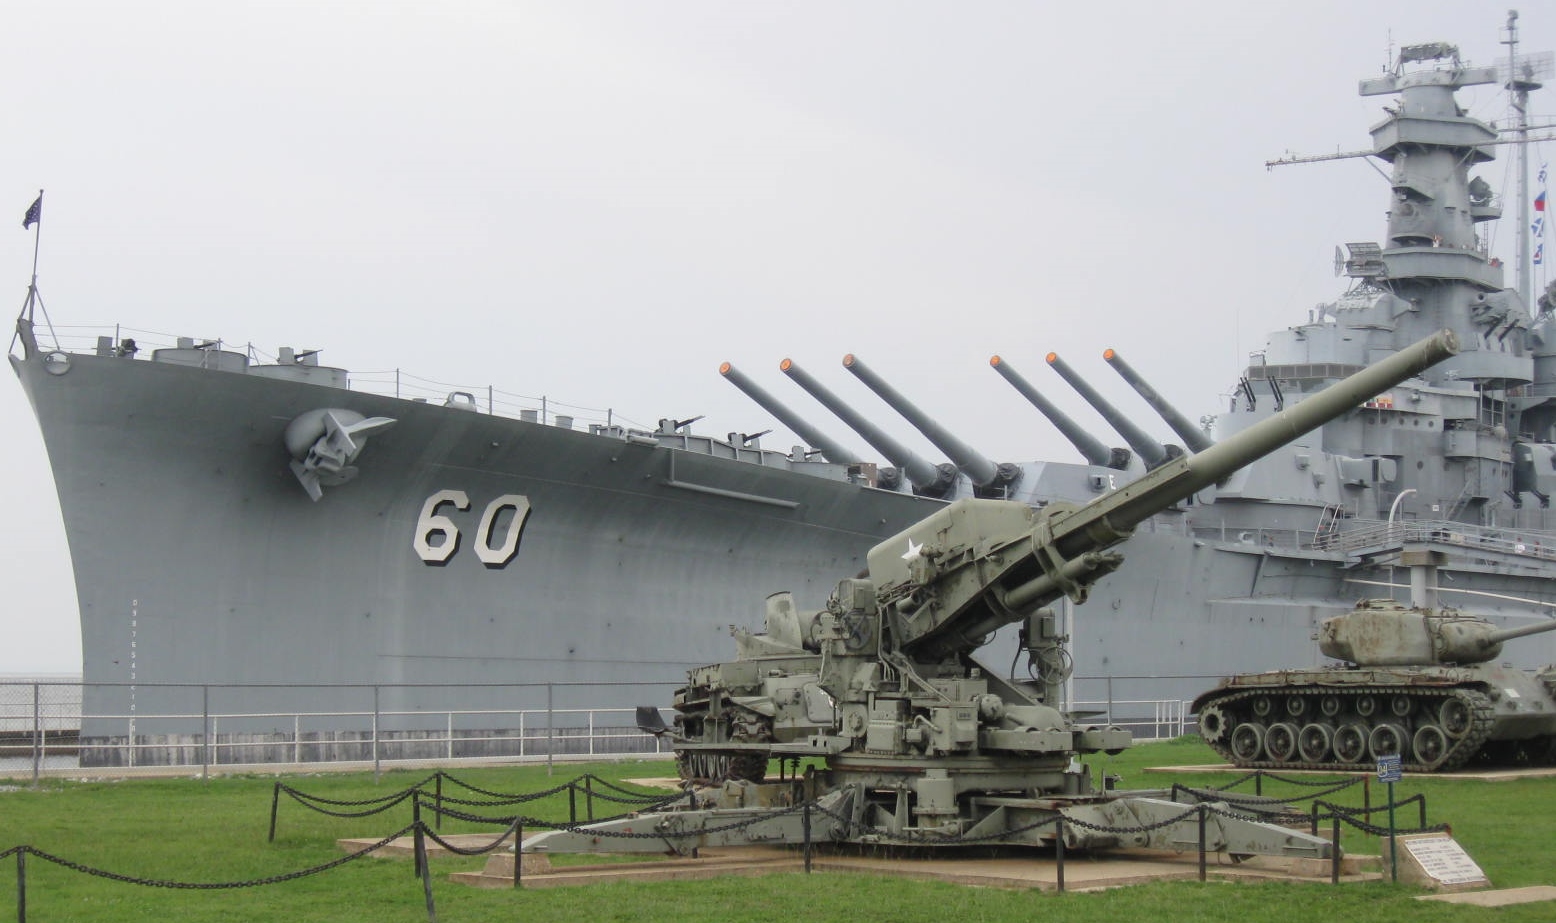 Uss Alabama Battleship Memorial Park